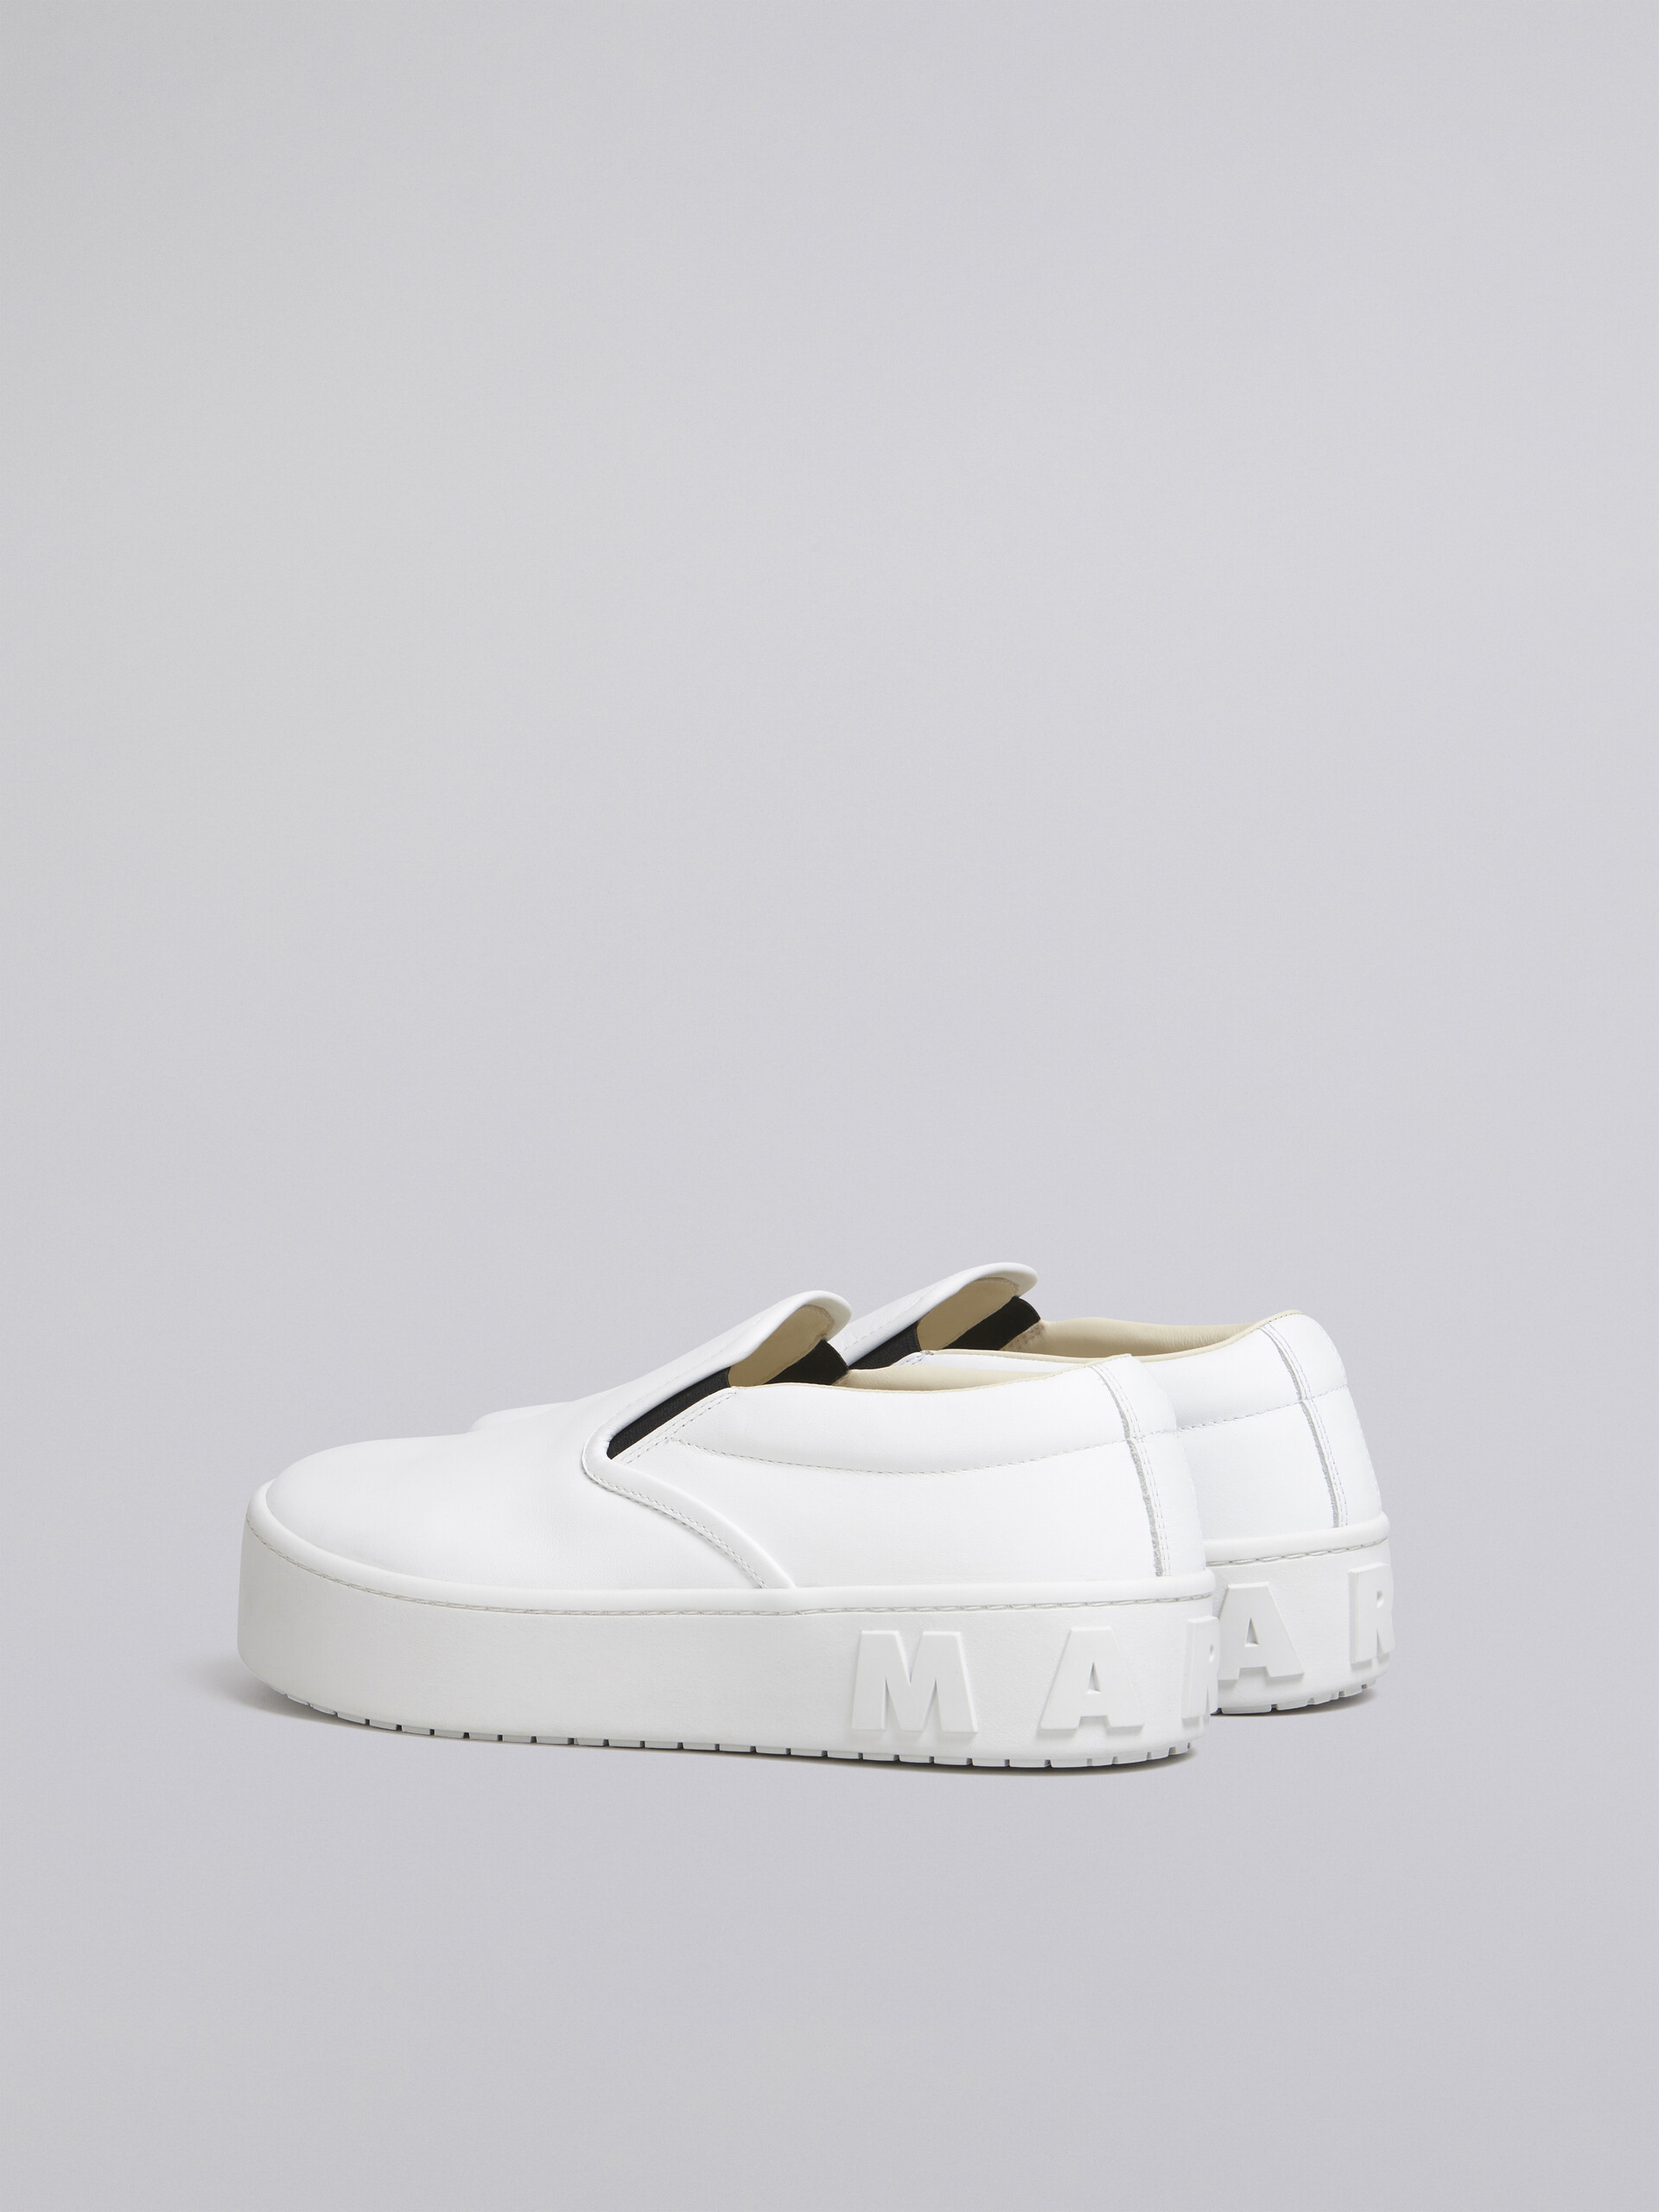 Slip-on-Sneaker aus weißem Kalbsleder mit hervorgehobenem Marni Maxi-Logo - Sneakers - Image 3